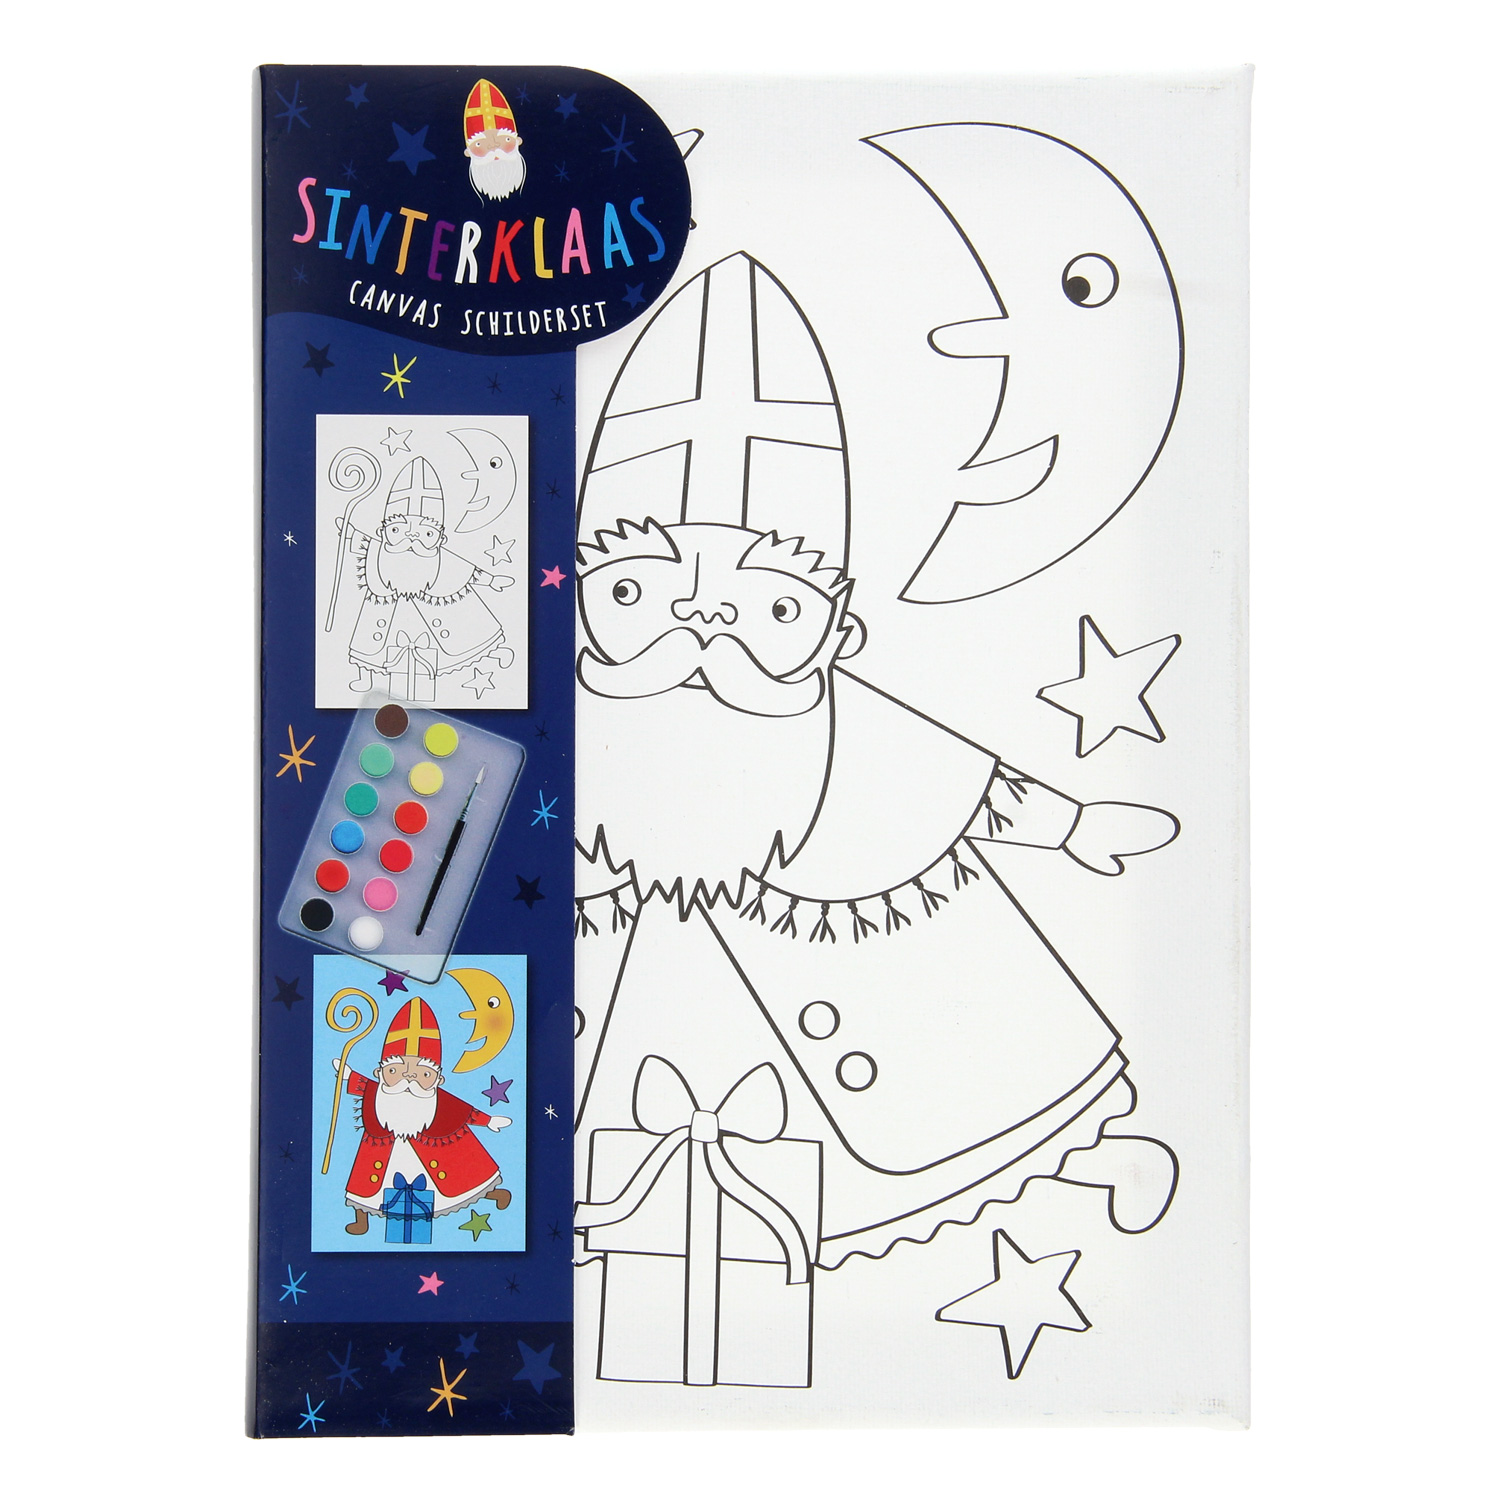 Canvas Schilderen Sinterklaas